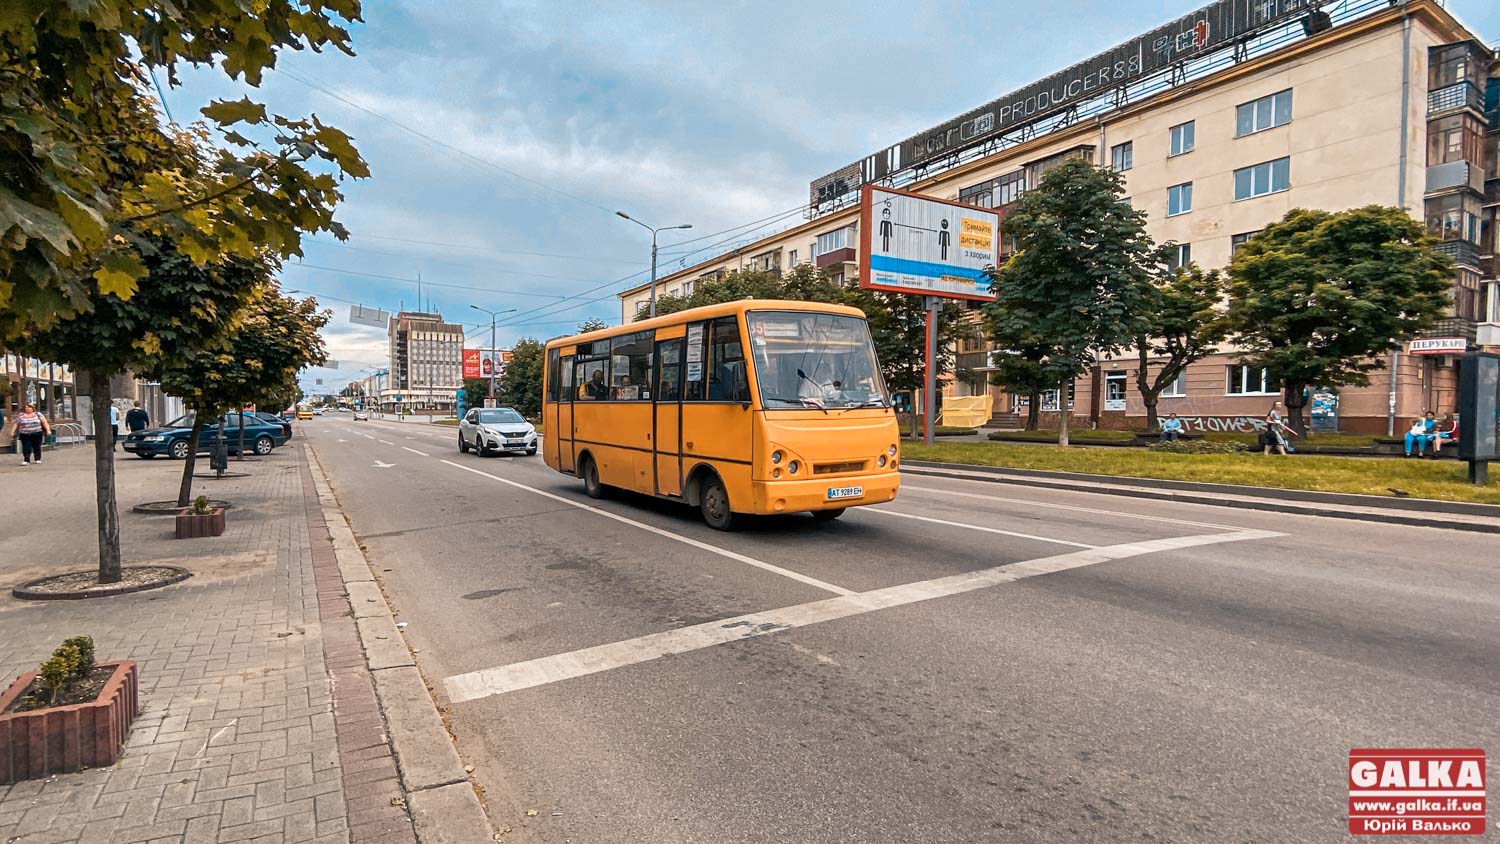 У Франківську проїзд в автобусах і тролейбусах може подорожчати. Чи не удвічі (ФОТО, ВІДЕО)